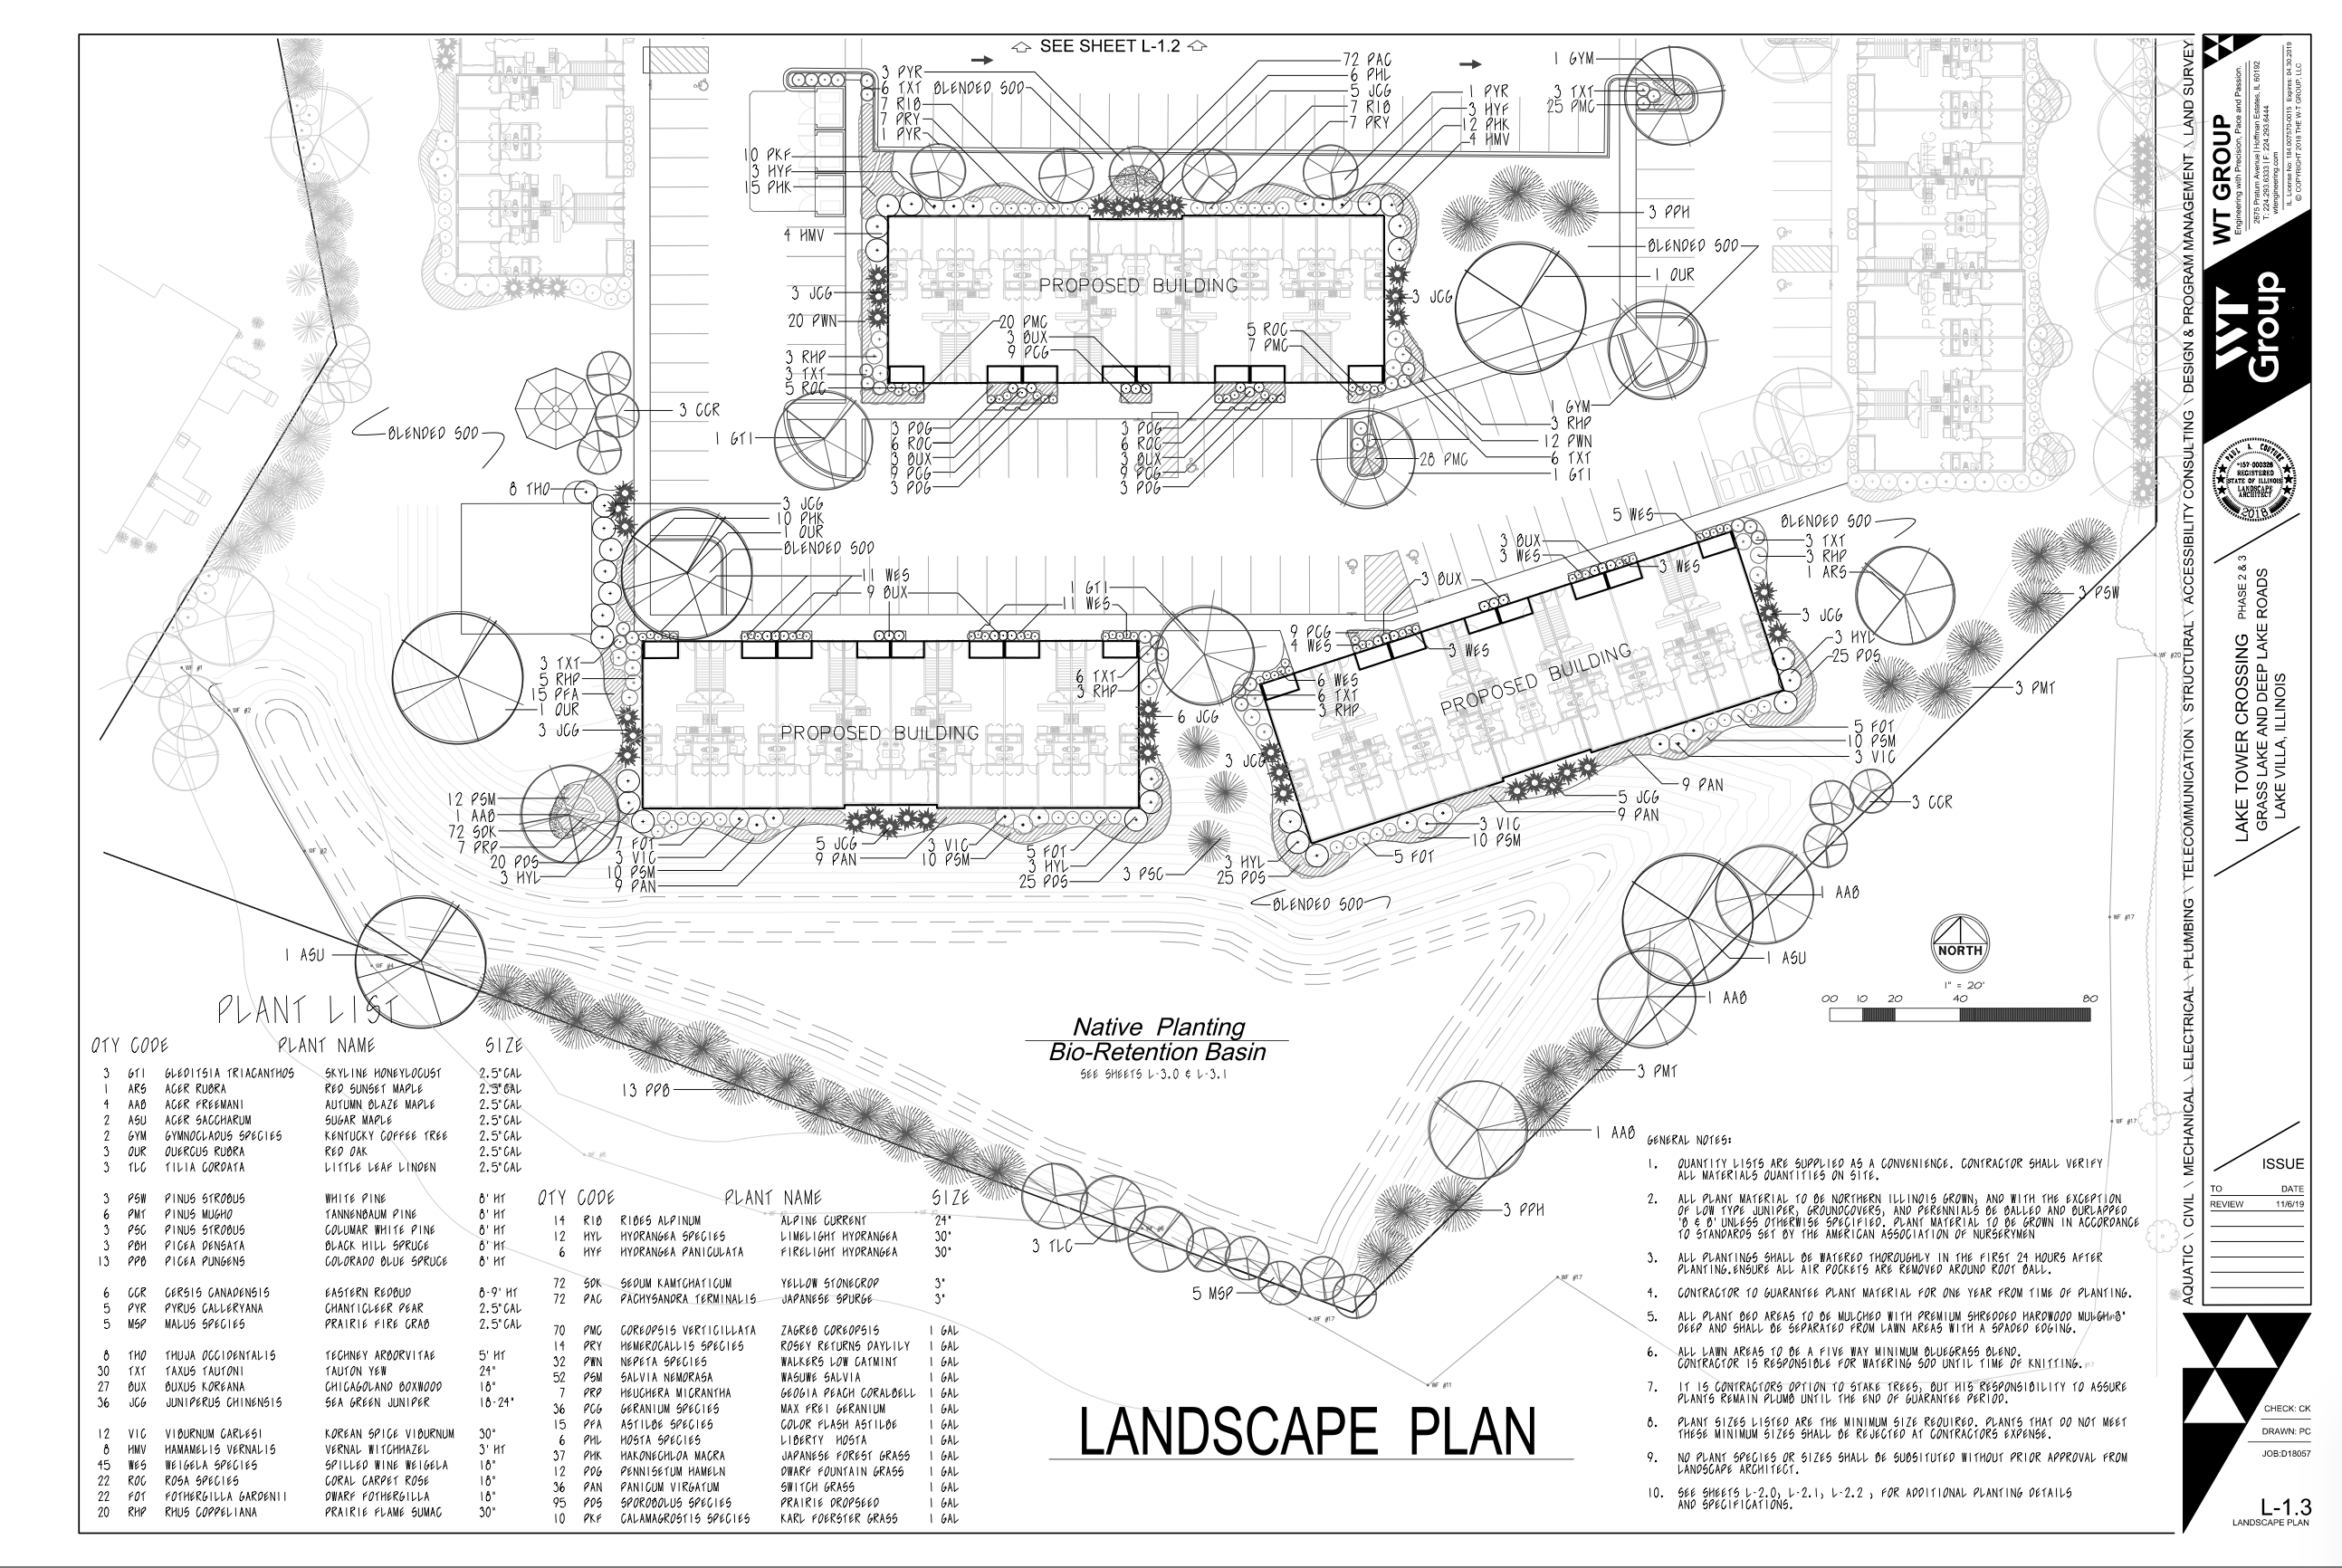 Tower Drive Development- Landscape Plans